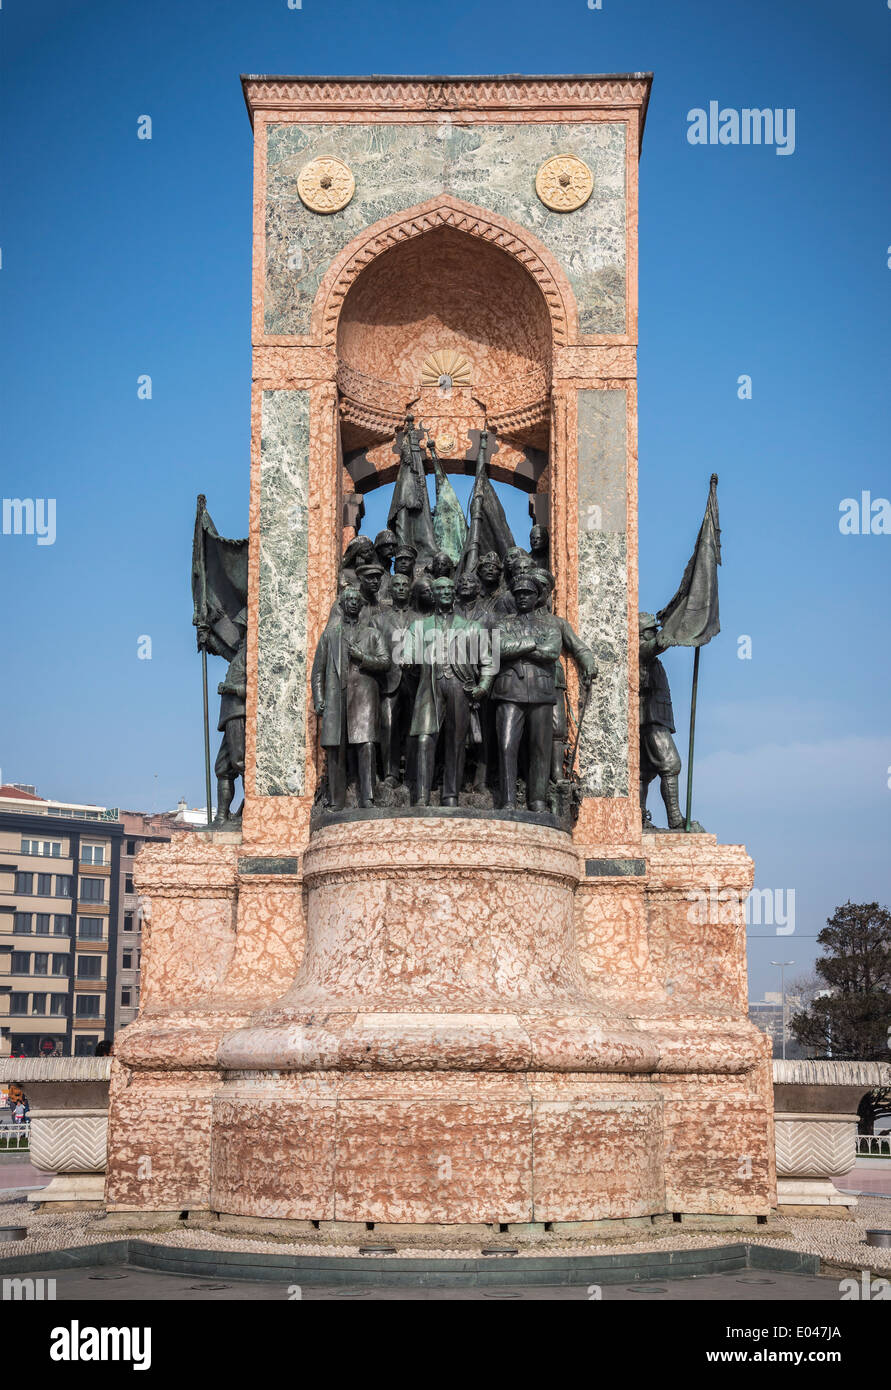 Le monument de la république, conçu par Pietro Canonica, sur la place Taksim, Istanbul, Turquie. Banque D'Images